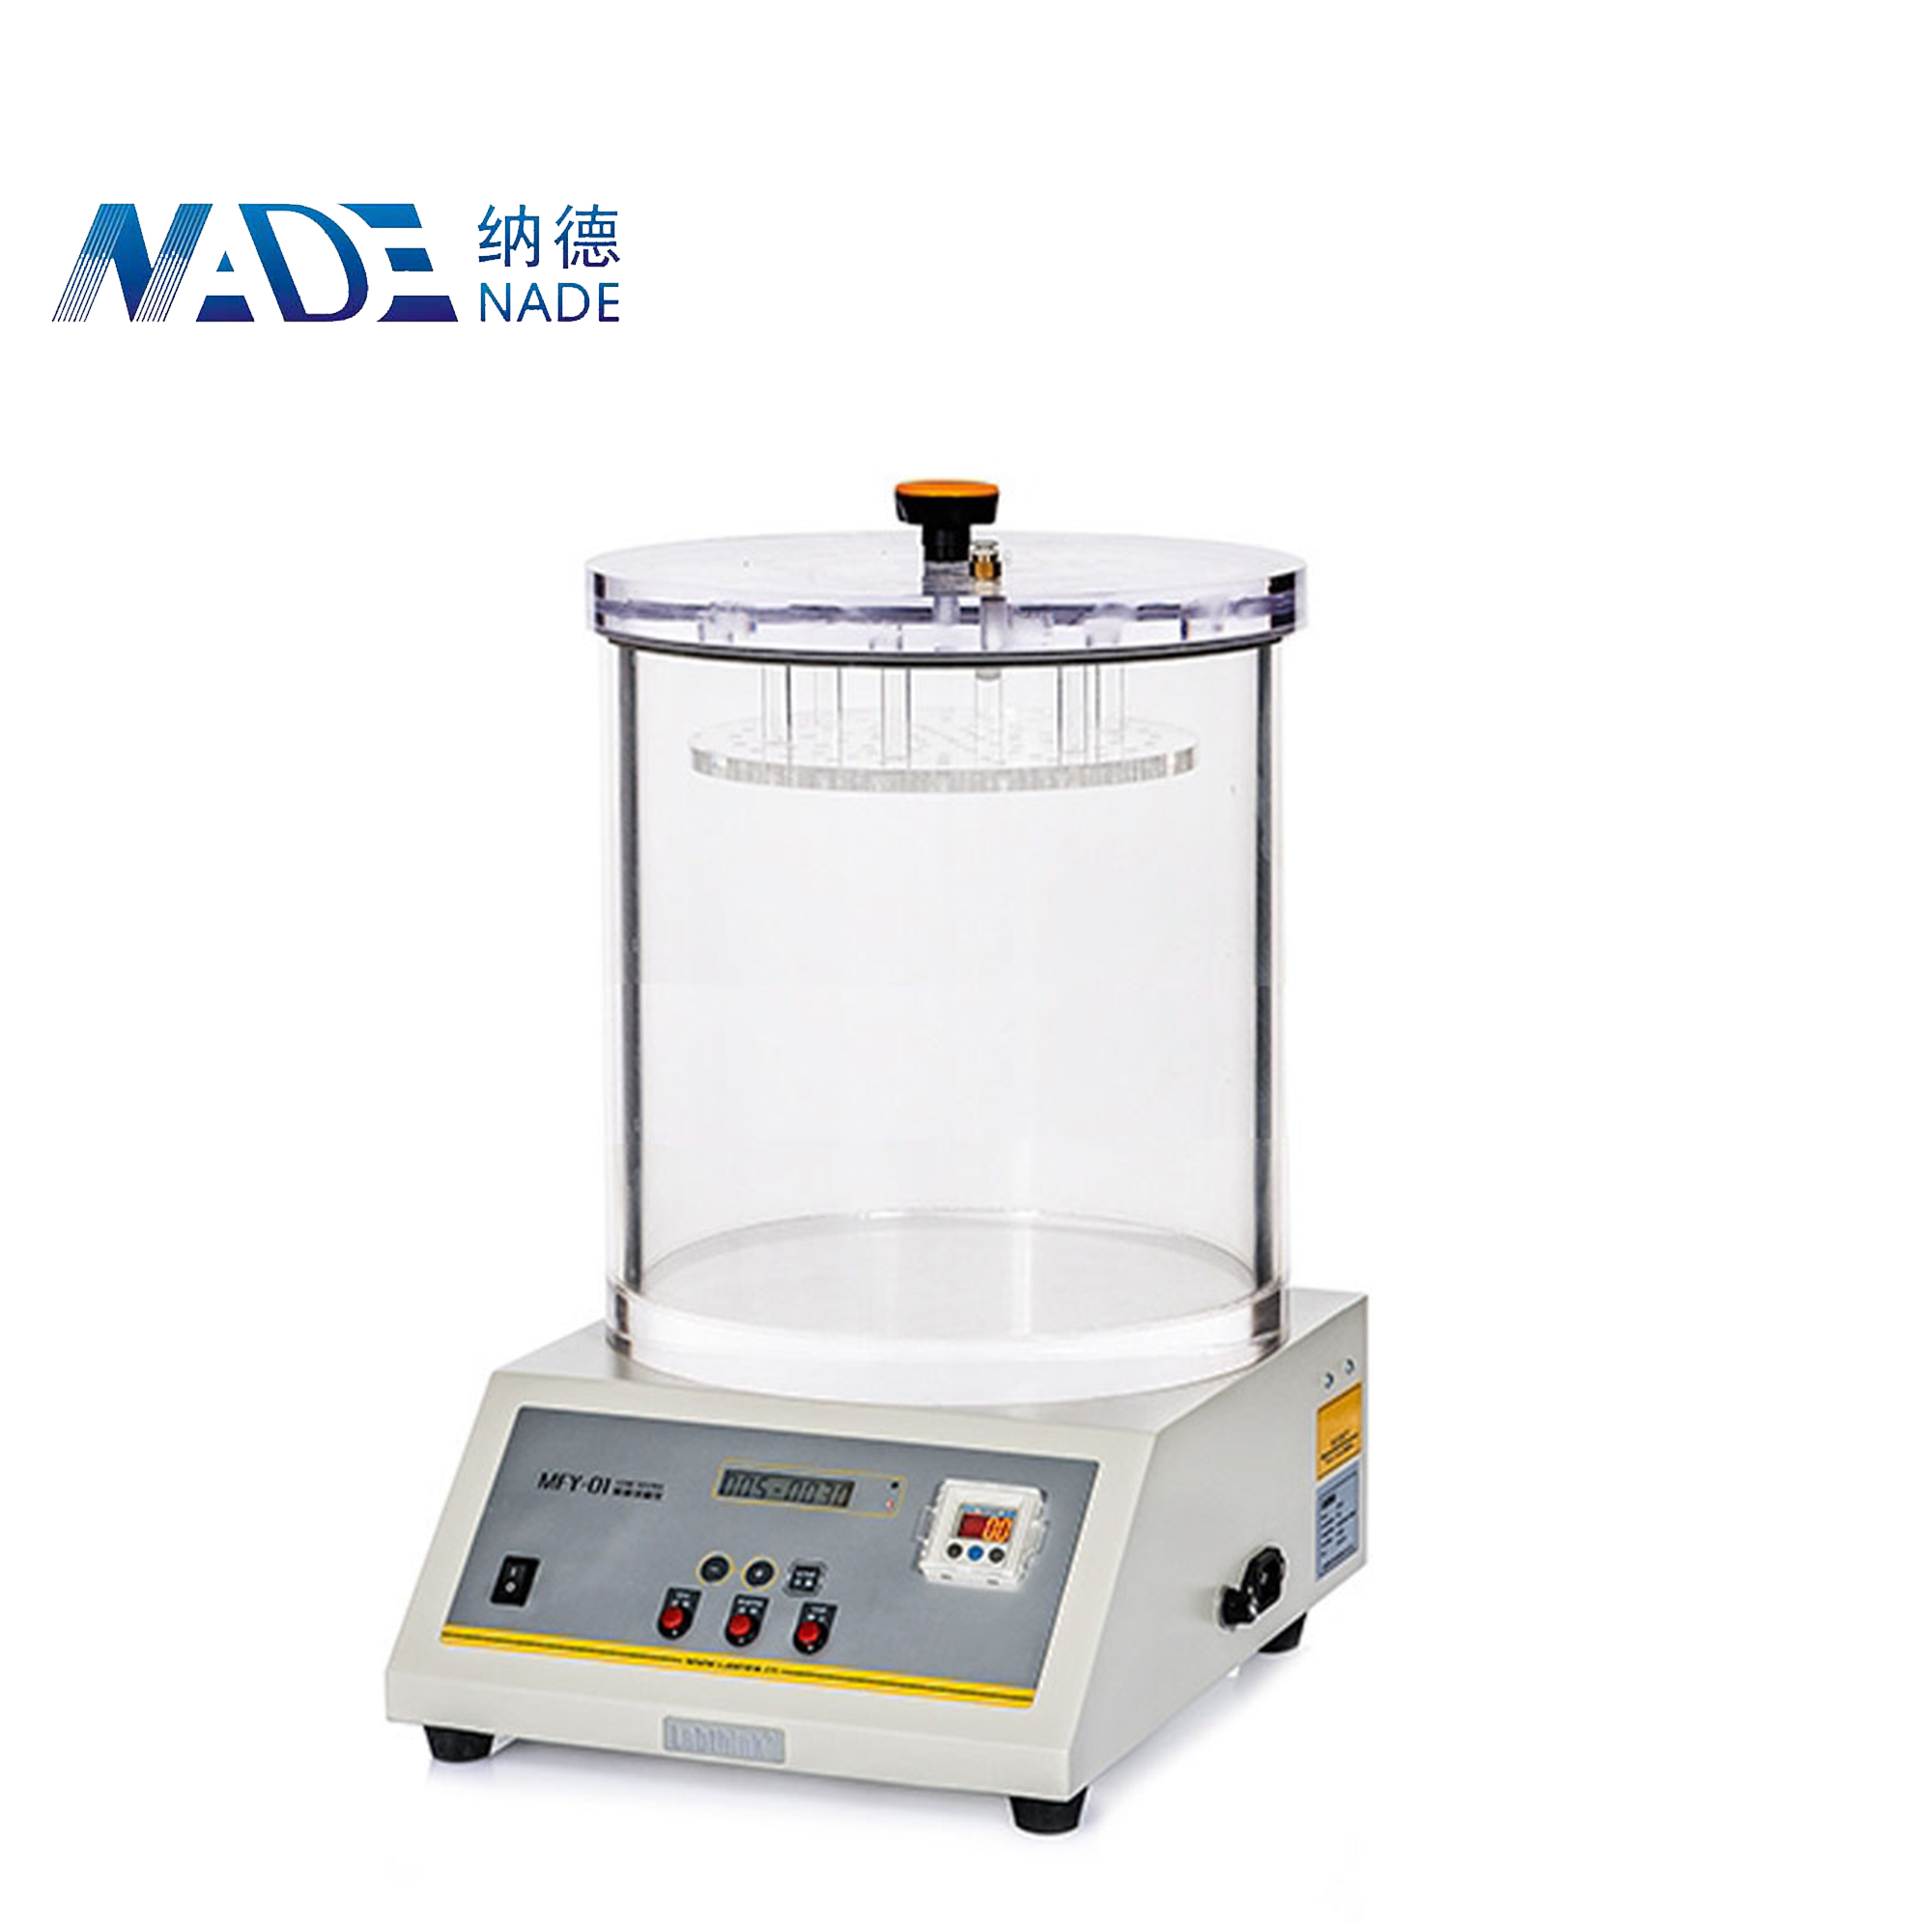 Nade Packaging Leak tester MFY-01 Standard Dia270 mmx 210 mm